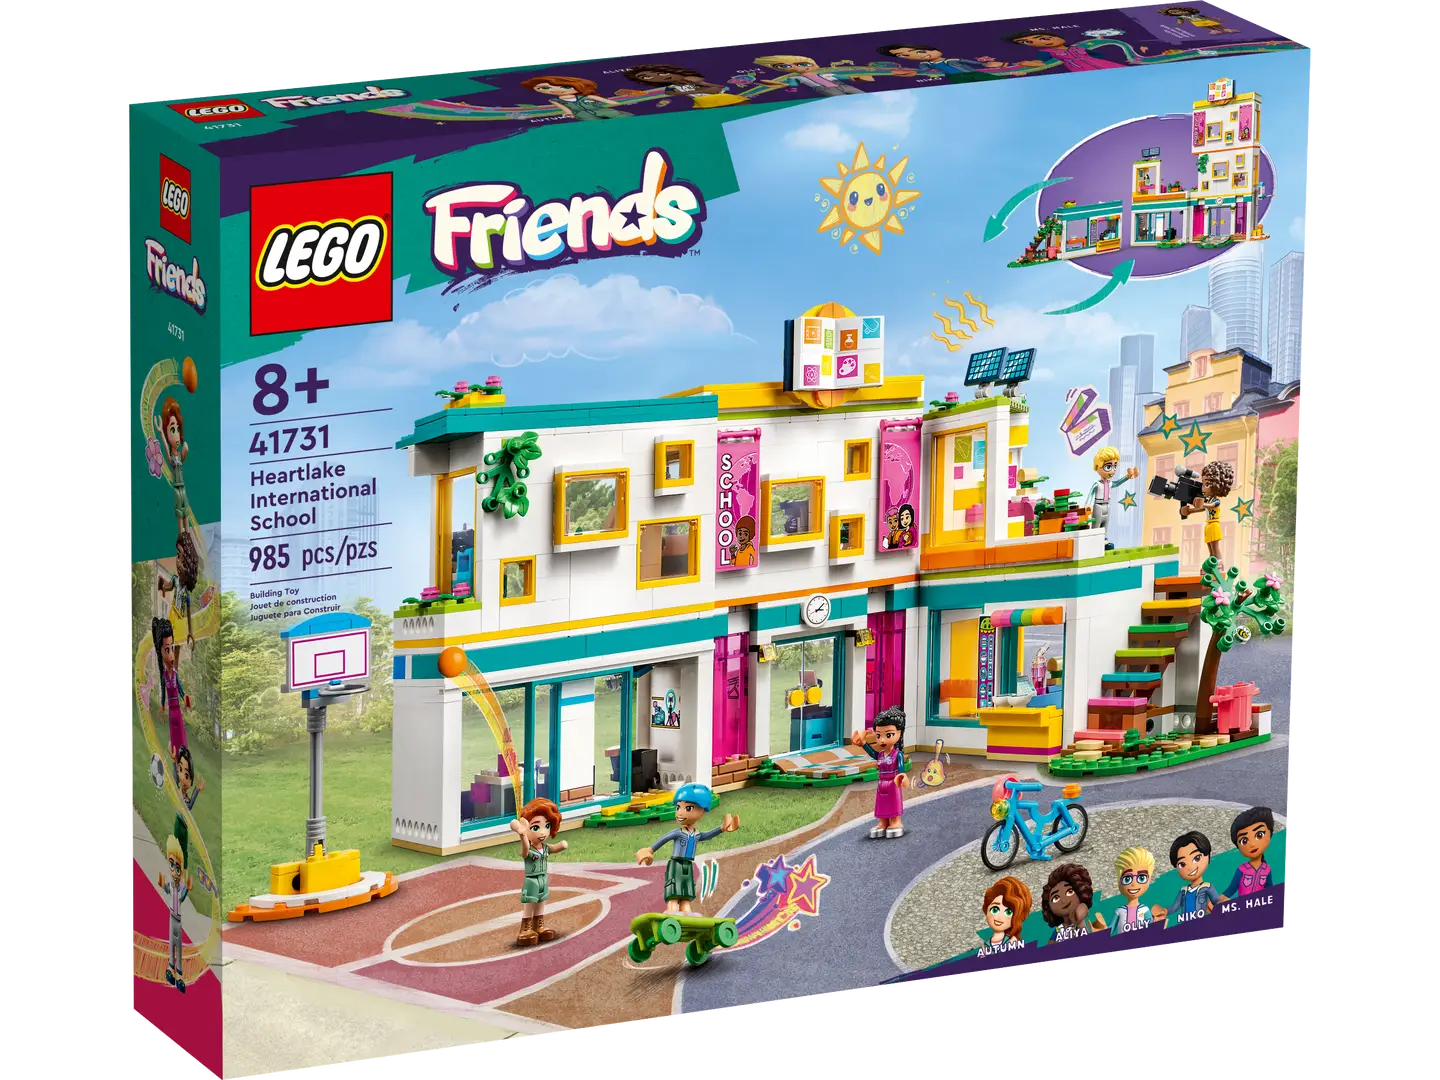 Lego Friends - Heartlake International School